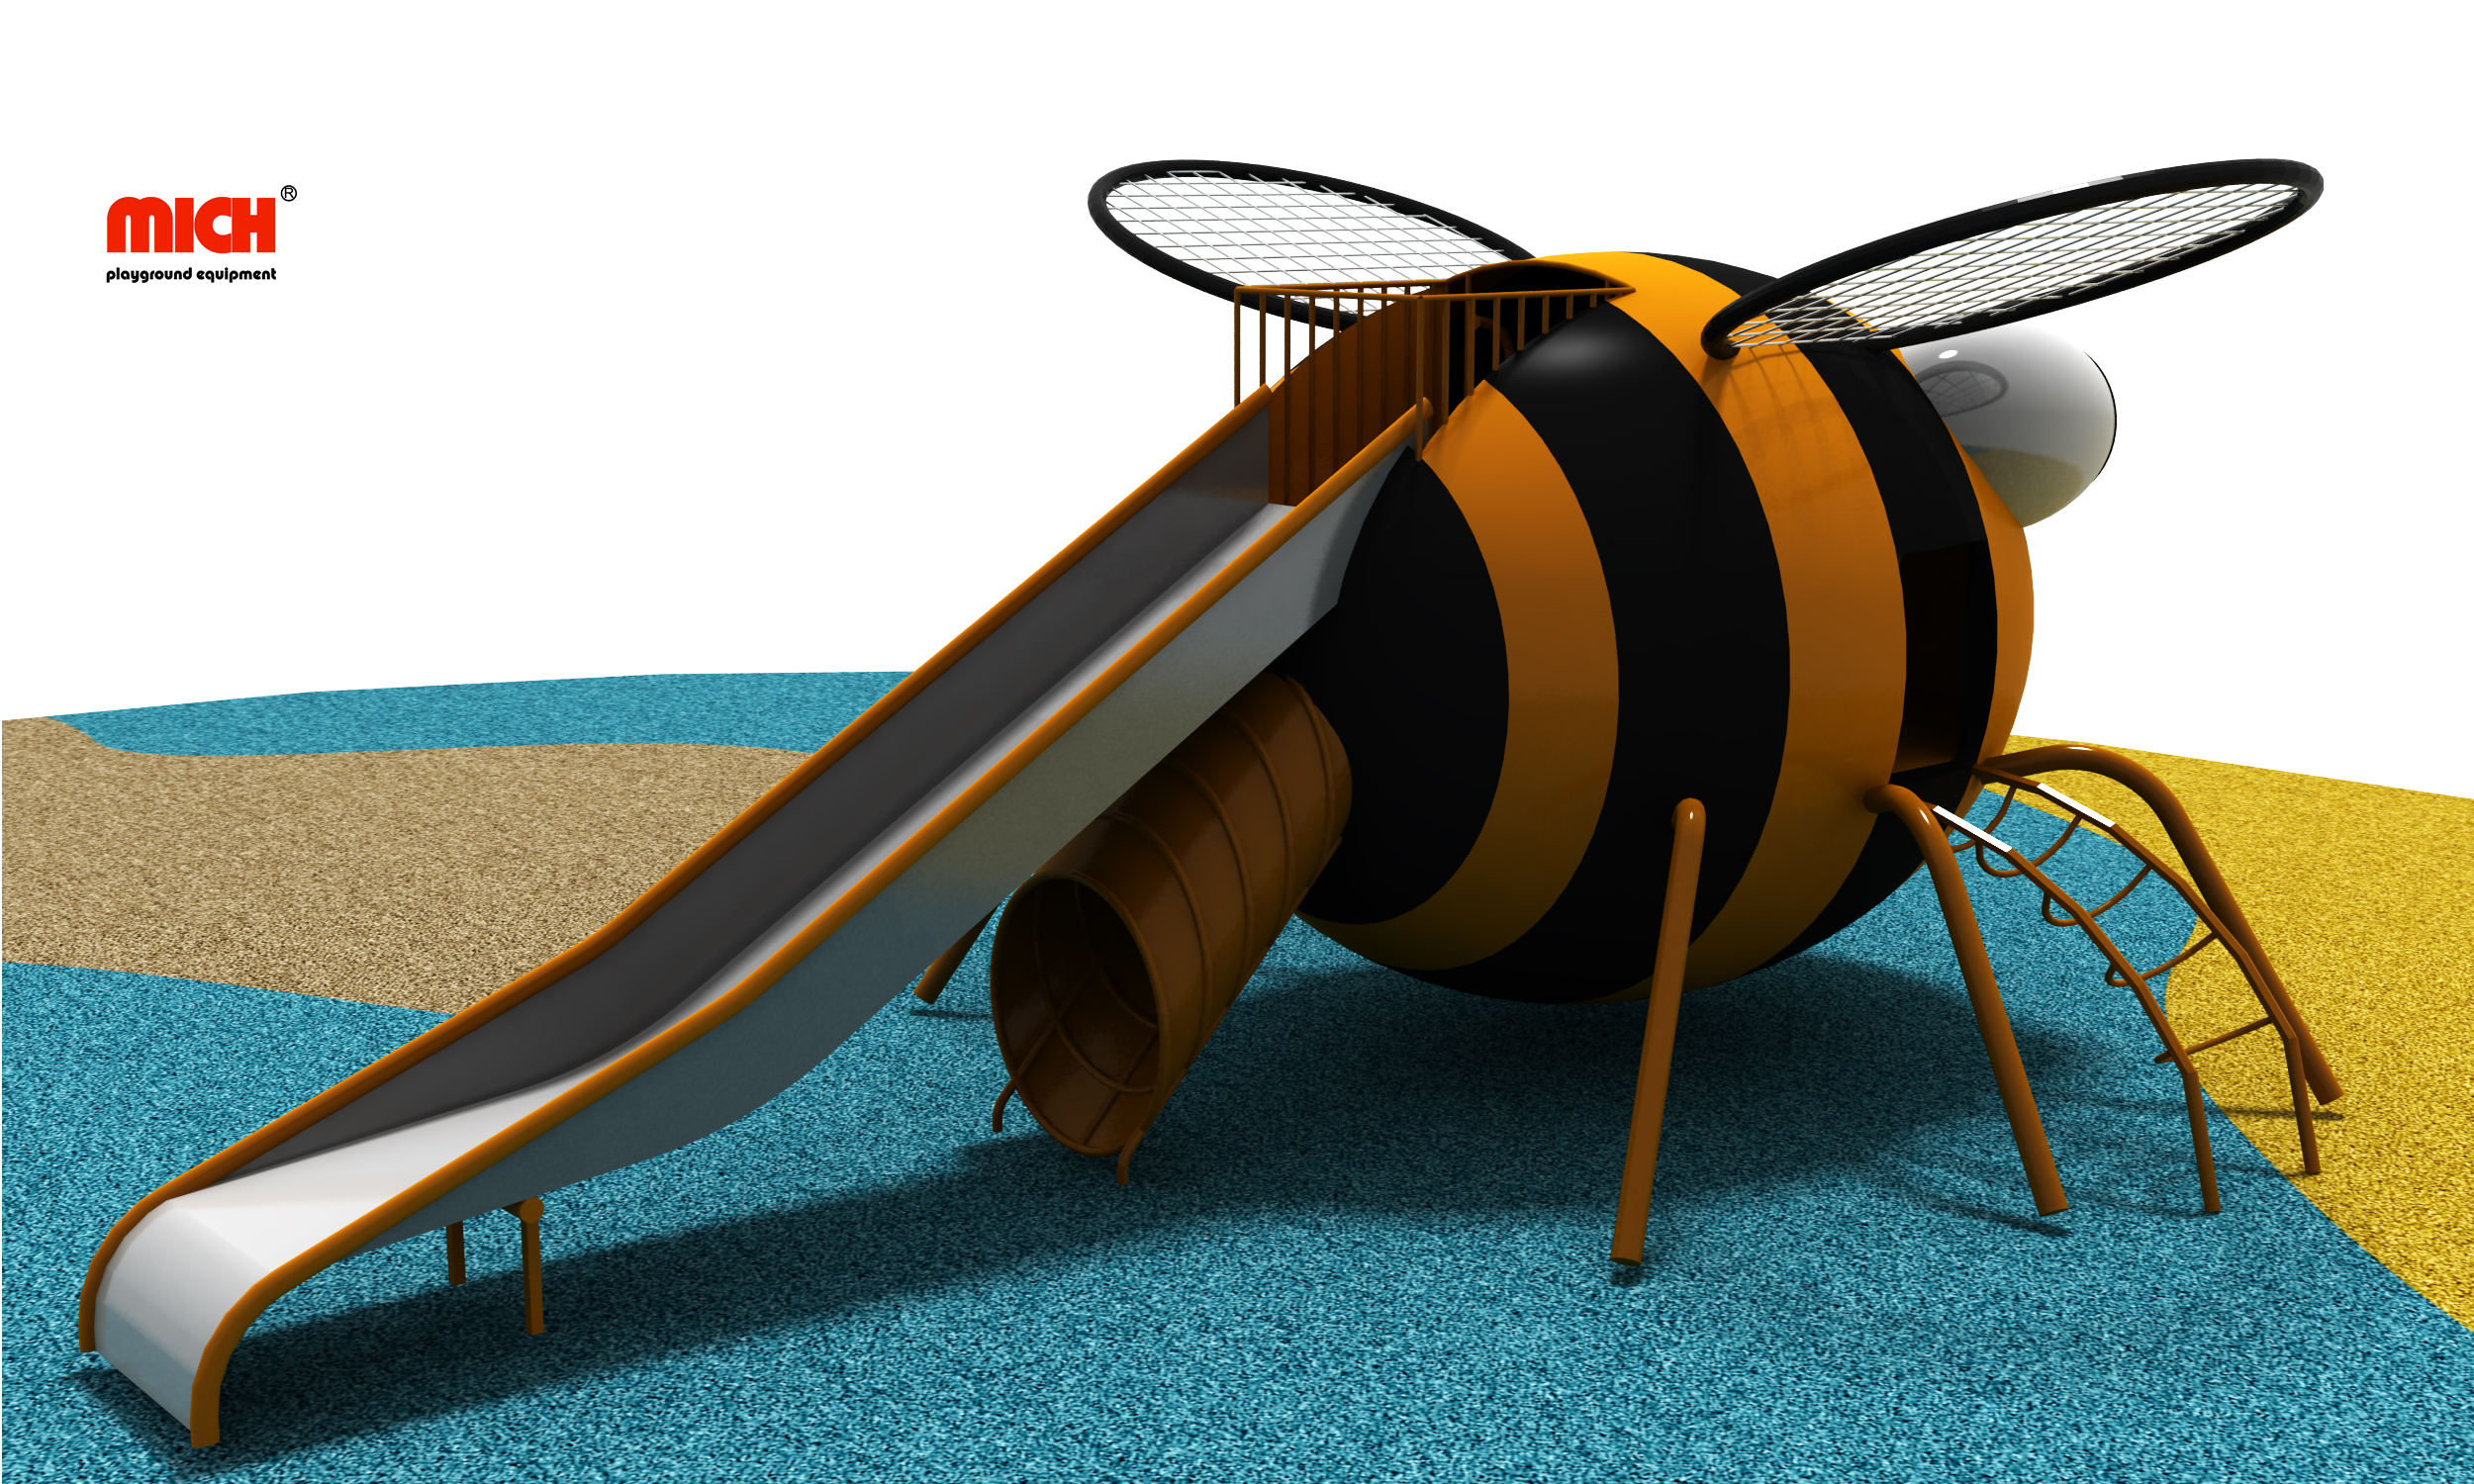 Slide in acciaio inossidabile all'ape all'aperto per bambini adulti